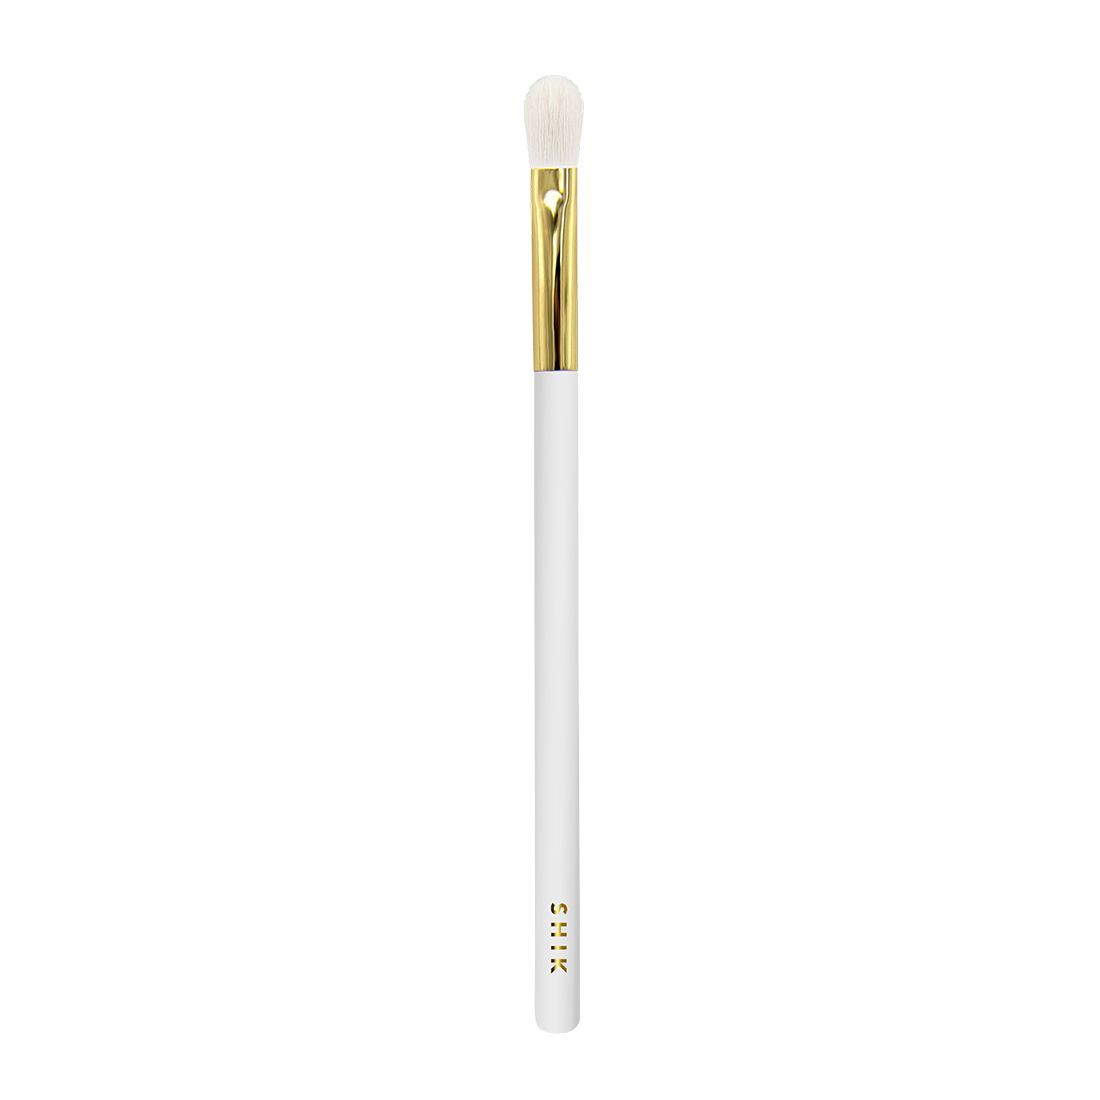 Кисть для теней SHIK Limited Edition Goldy G04 детальная растушевка, лимитированная, белая кисть для макияжа shik лимитированная g02